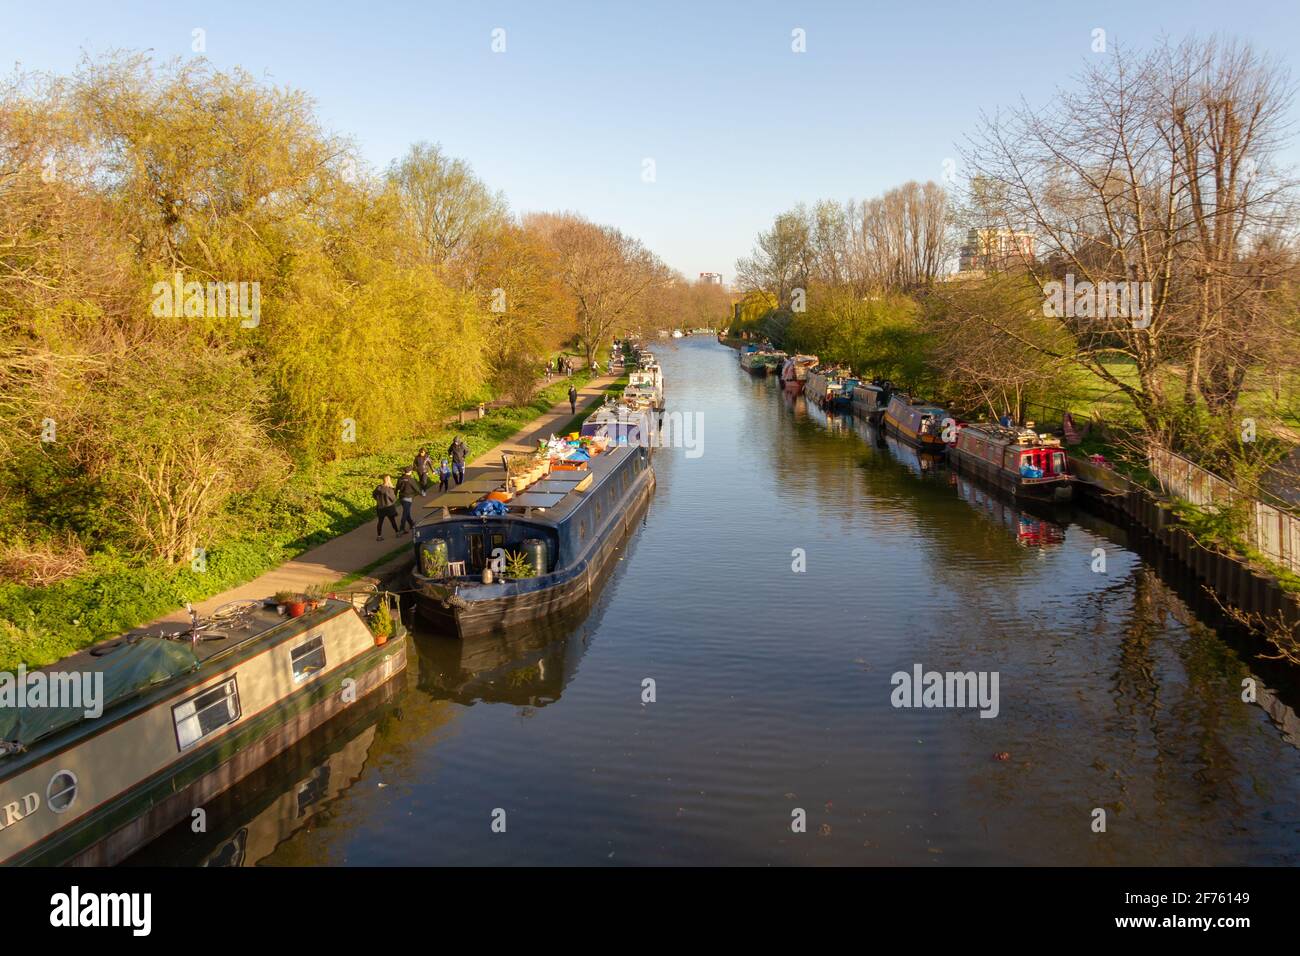 Londres, Royaume-Uni, 2020: Une journée ensoleillée à Hackney pendant le Lockdown le long de la rivière Lee avec de l'eau claire Banque D'Images